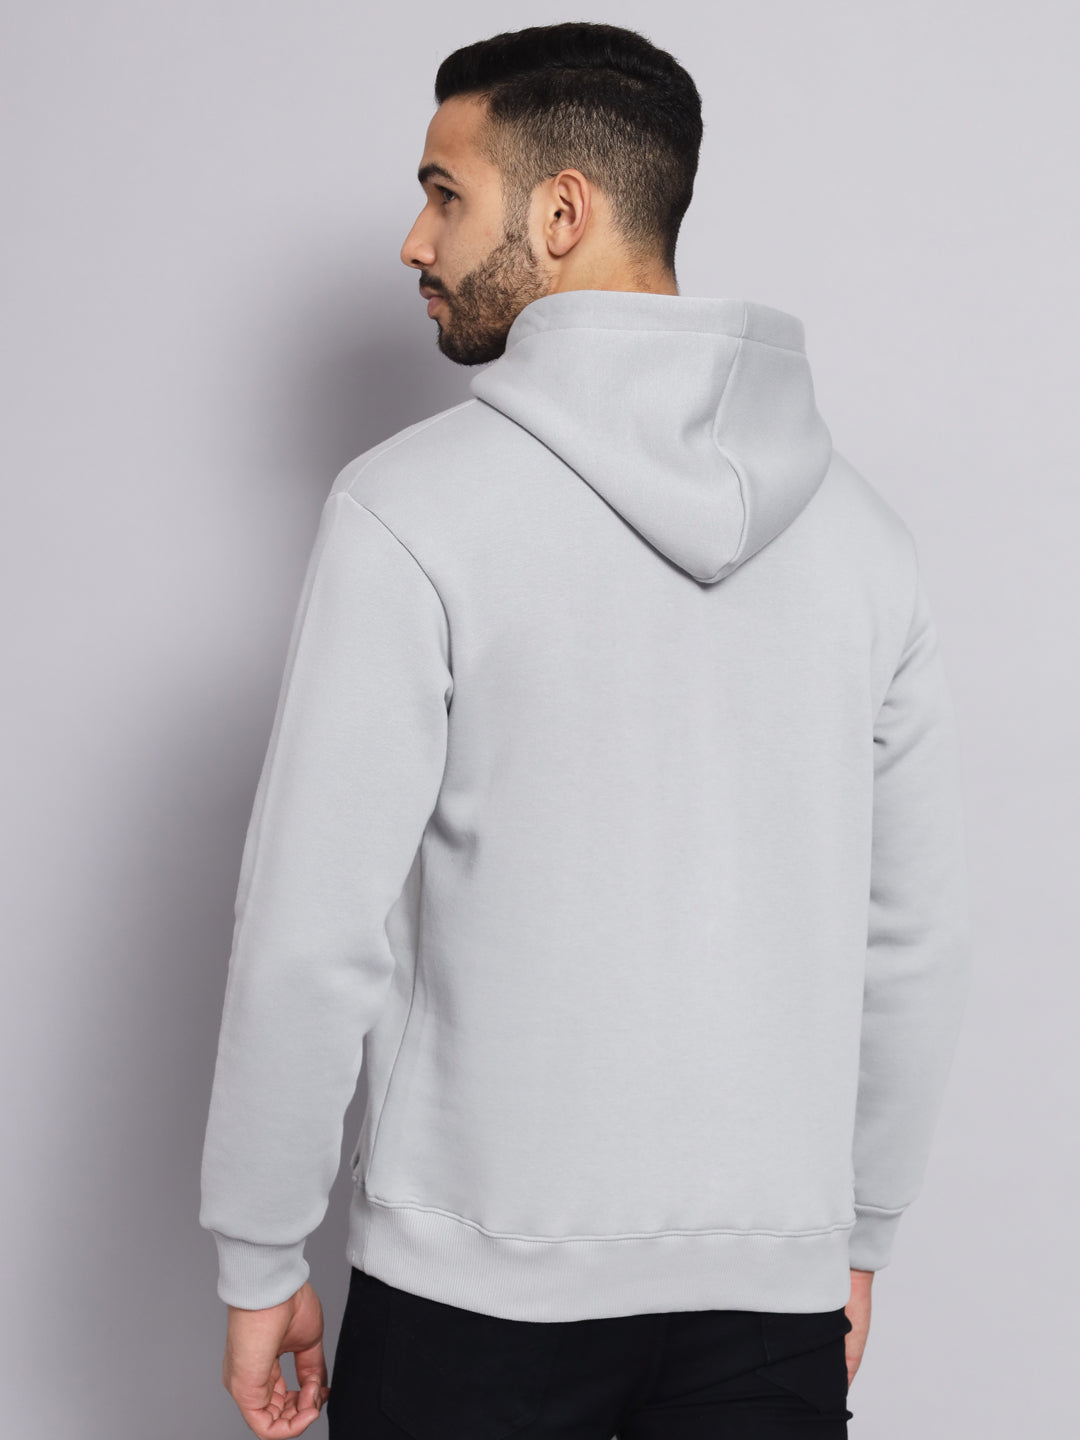 Griffel Men's Steel Grey Cotton Front Logo Fleece Hoody Sweatshirt with Full Sleeve - griffel